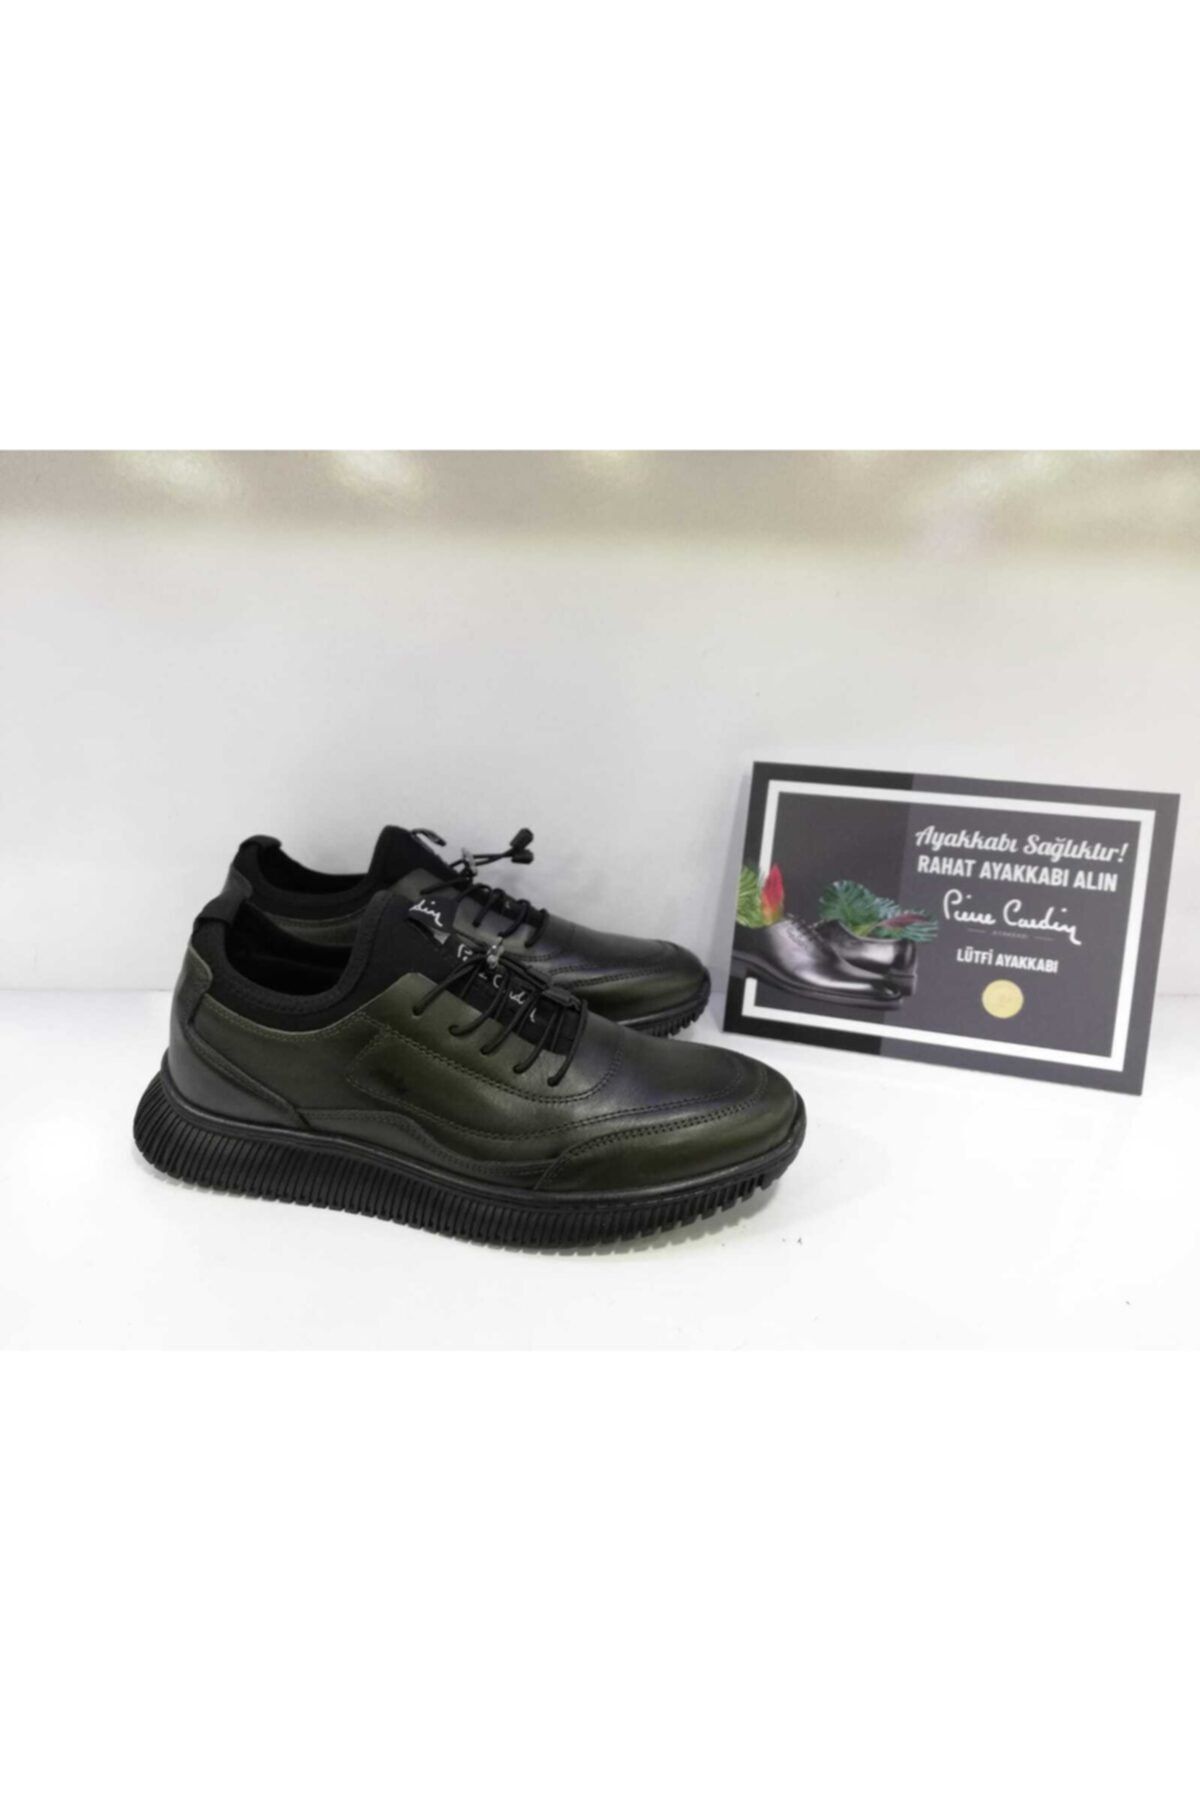 Pierre Cardin Erkek Hakiki Deri Haki Yeşil Sneakers Ayakkabı 2103